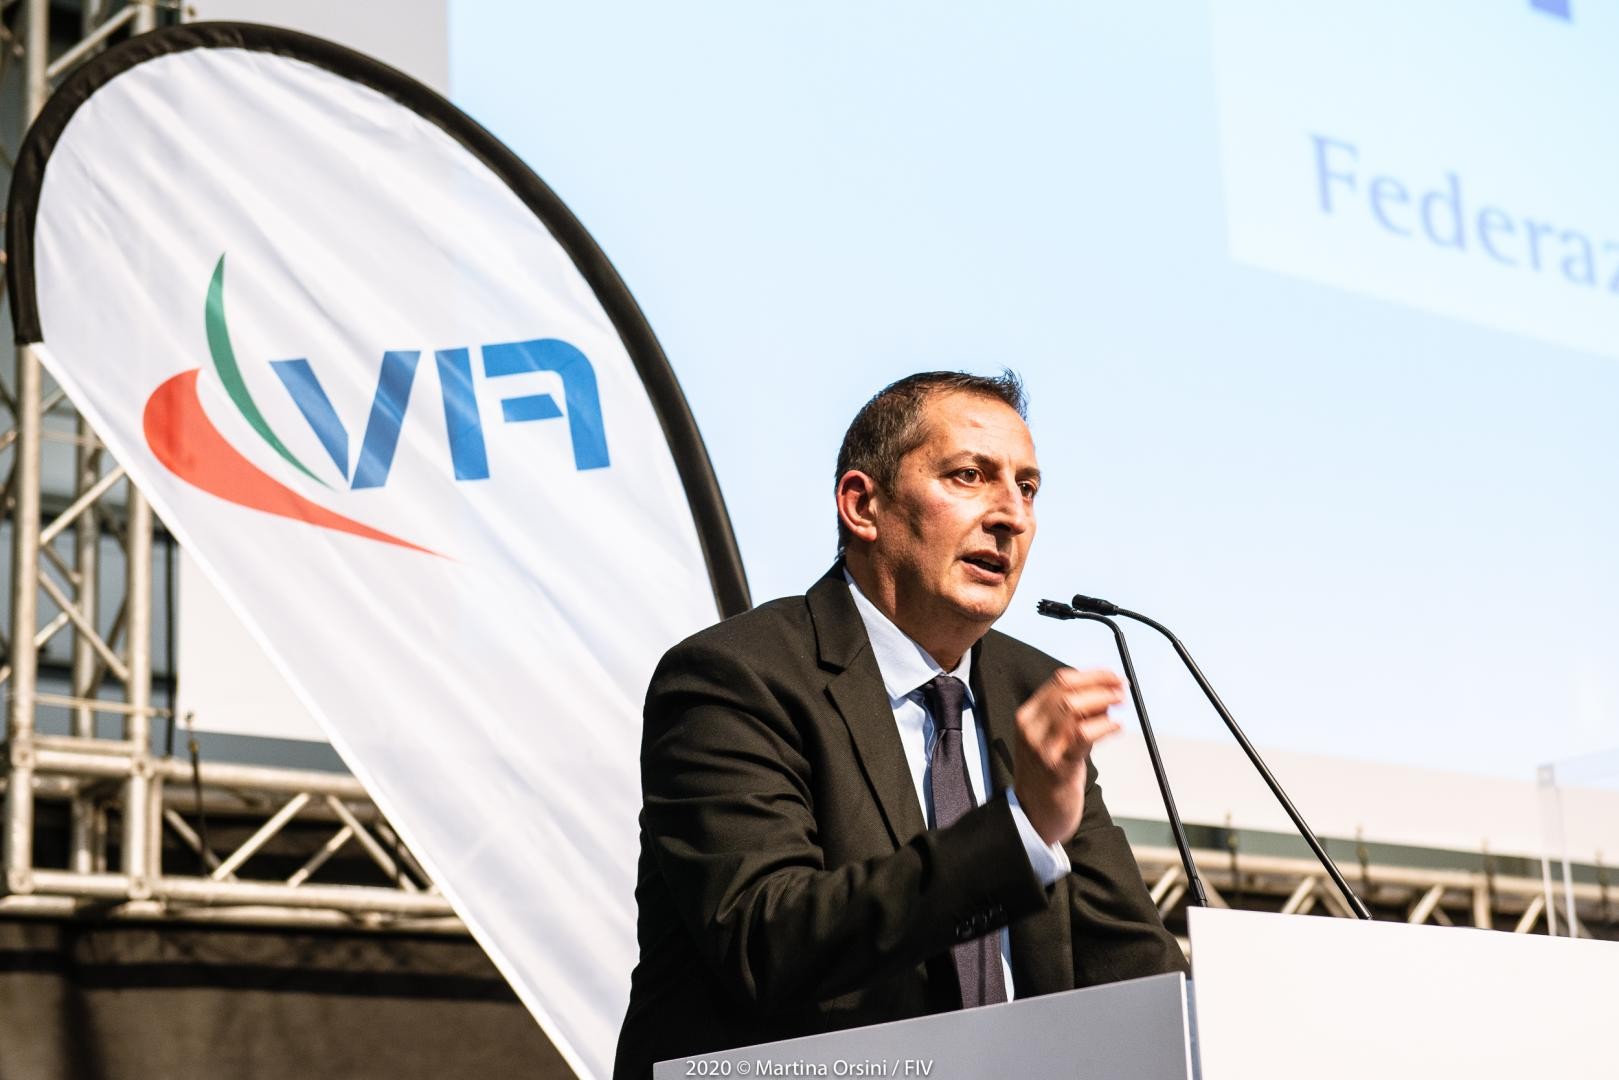 Francesco Ettorre rieletto presidente della FIV per il quadriennio 2021-2024